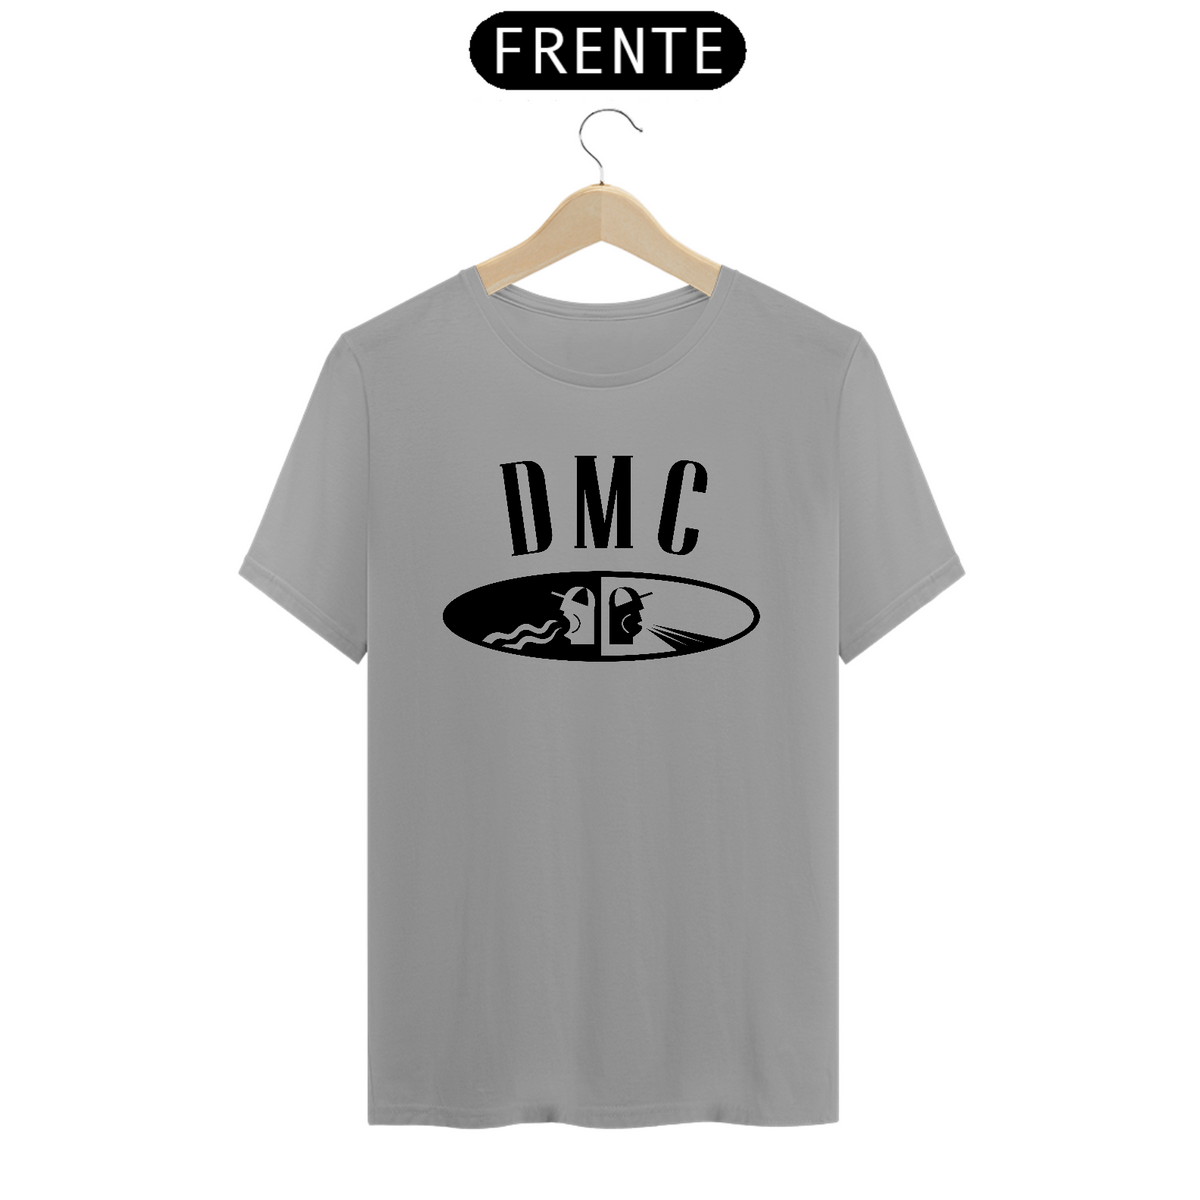 Nome do produto: Camiseta DMC DJ STAMP PRETO